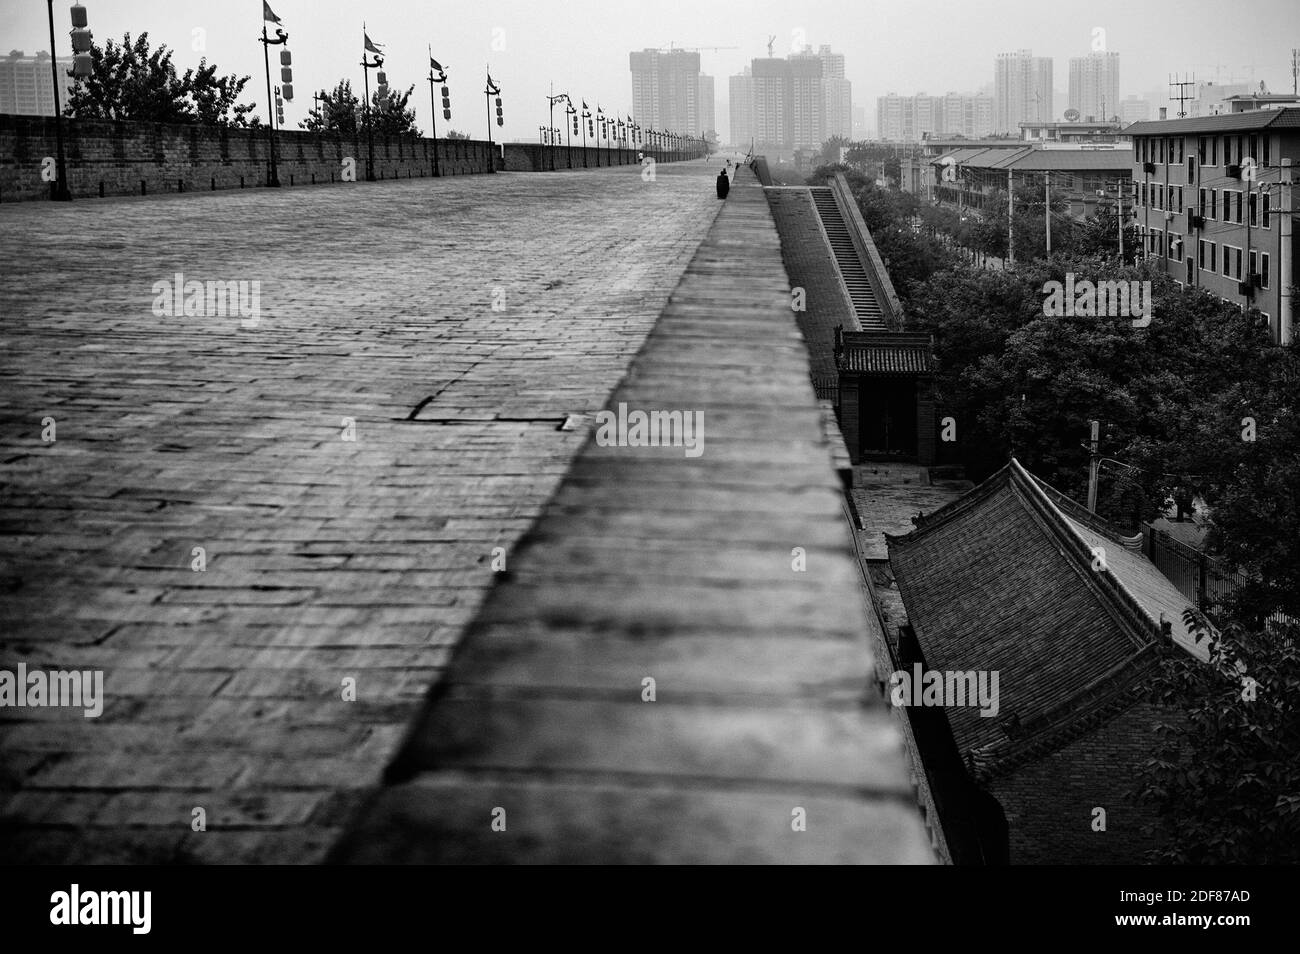 Marciapiede pedonale sulla parte superiore della fortificazione le mura della città di Xian, Cinese storico. In bianco e nero di una fotografia. Foto Stock